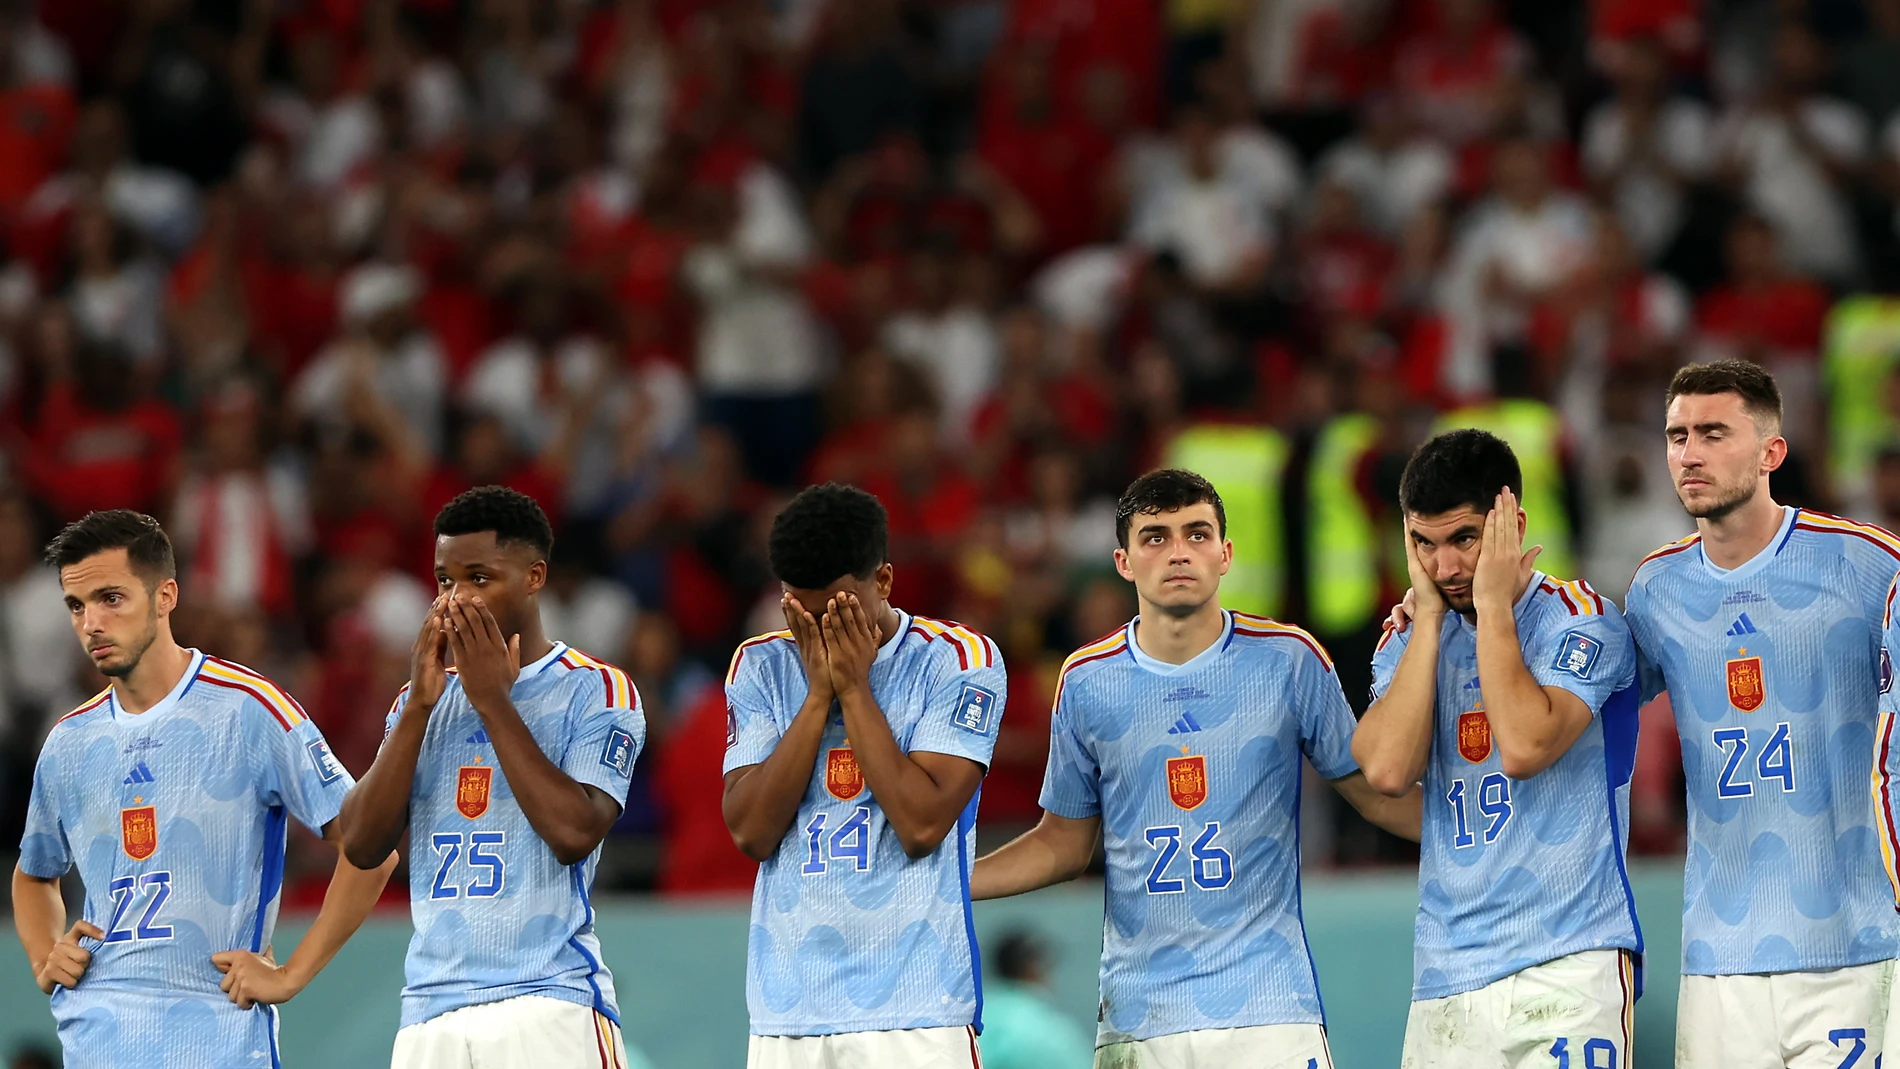 La selección española tras quedar eliminada del Mundial de Qatar 2022 frente a Marruecos. EFE/EPA/Tolga Bozoglu